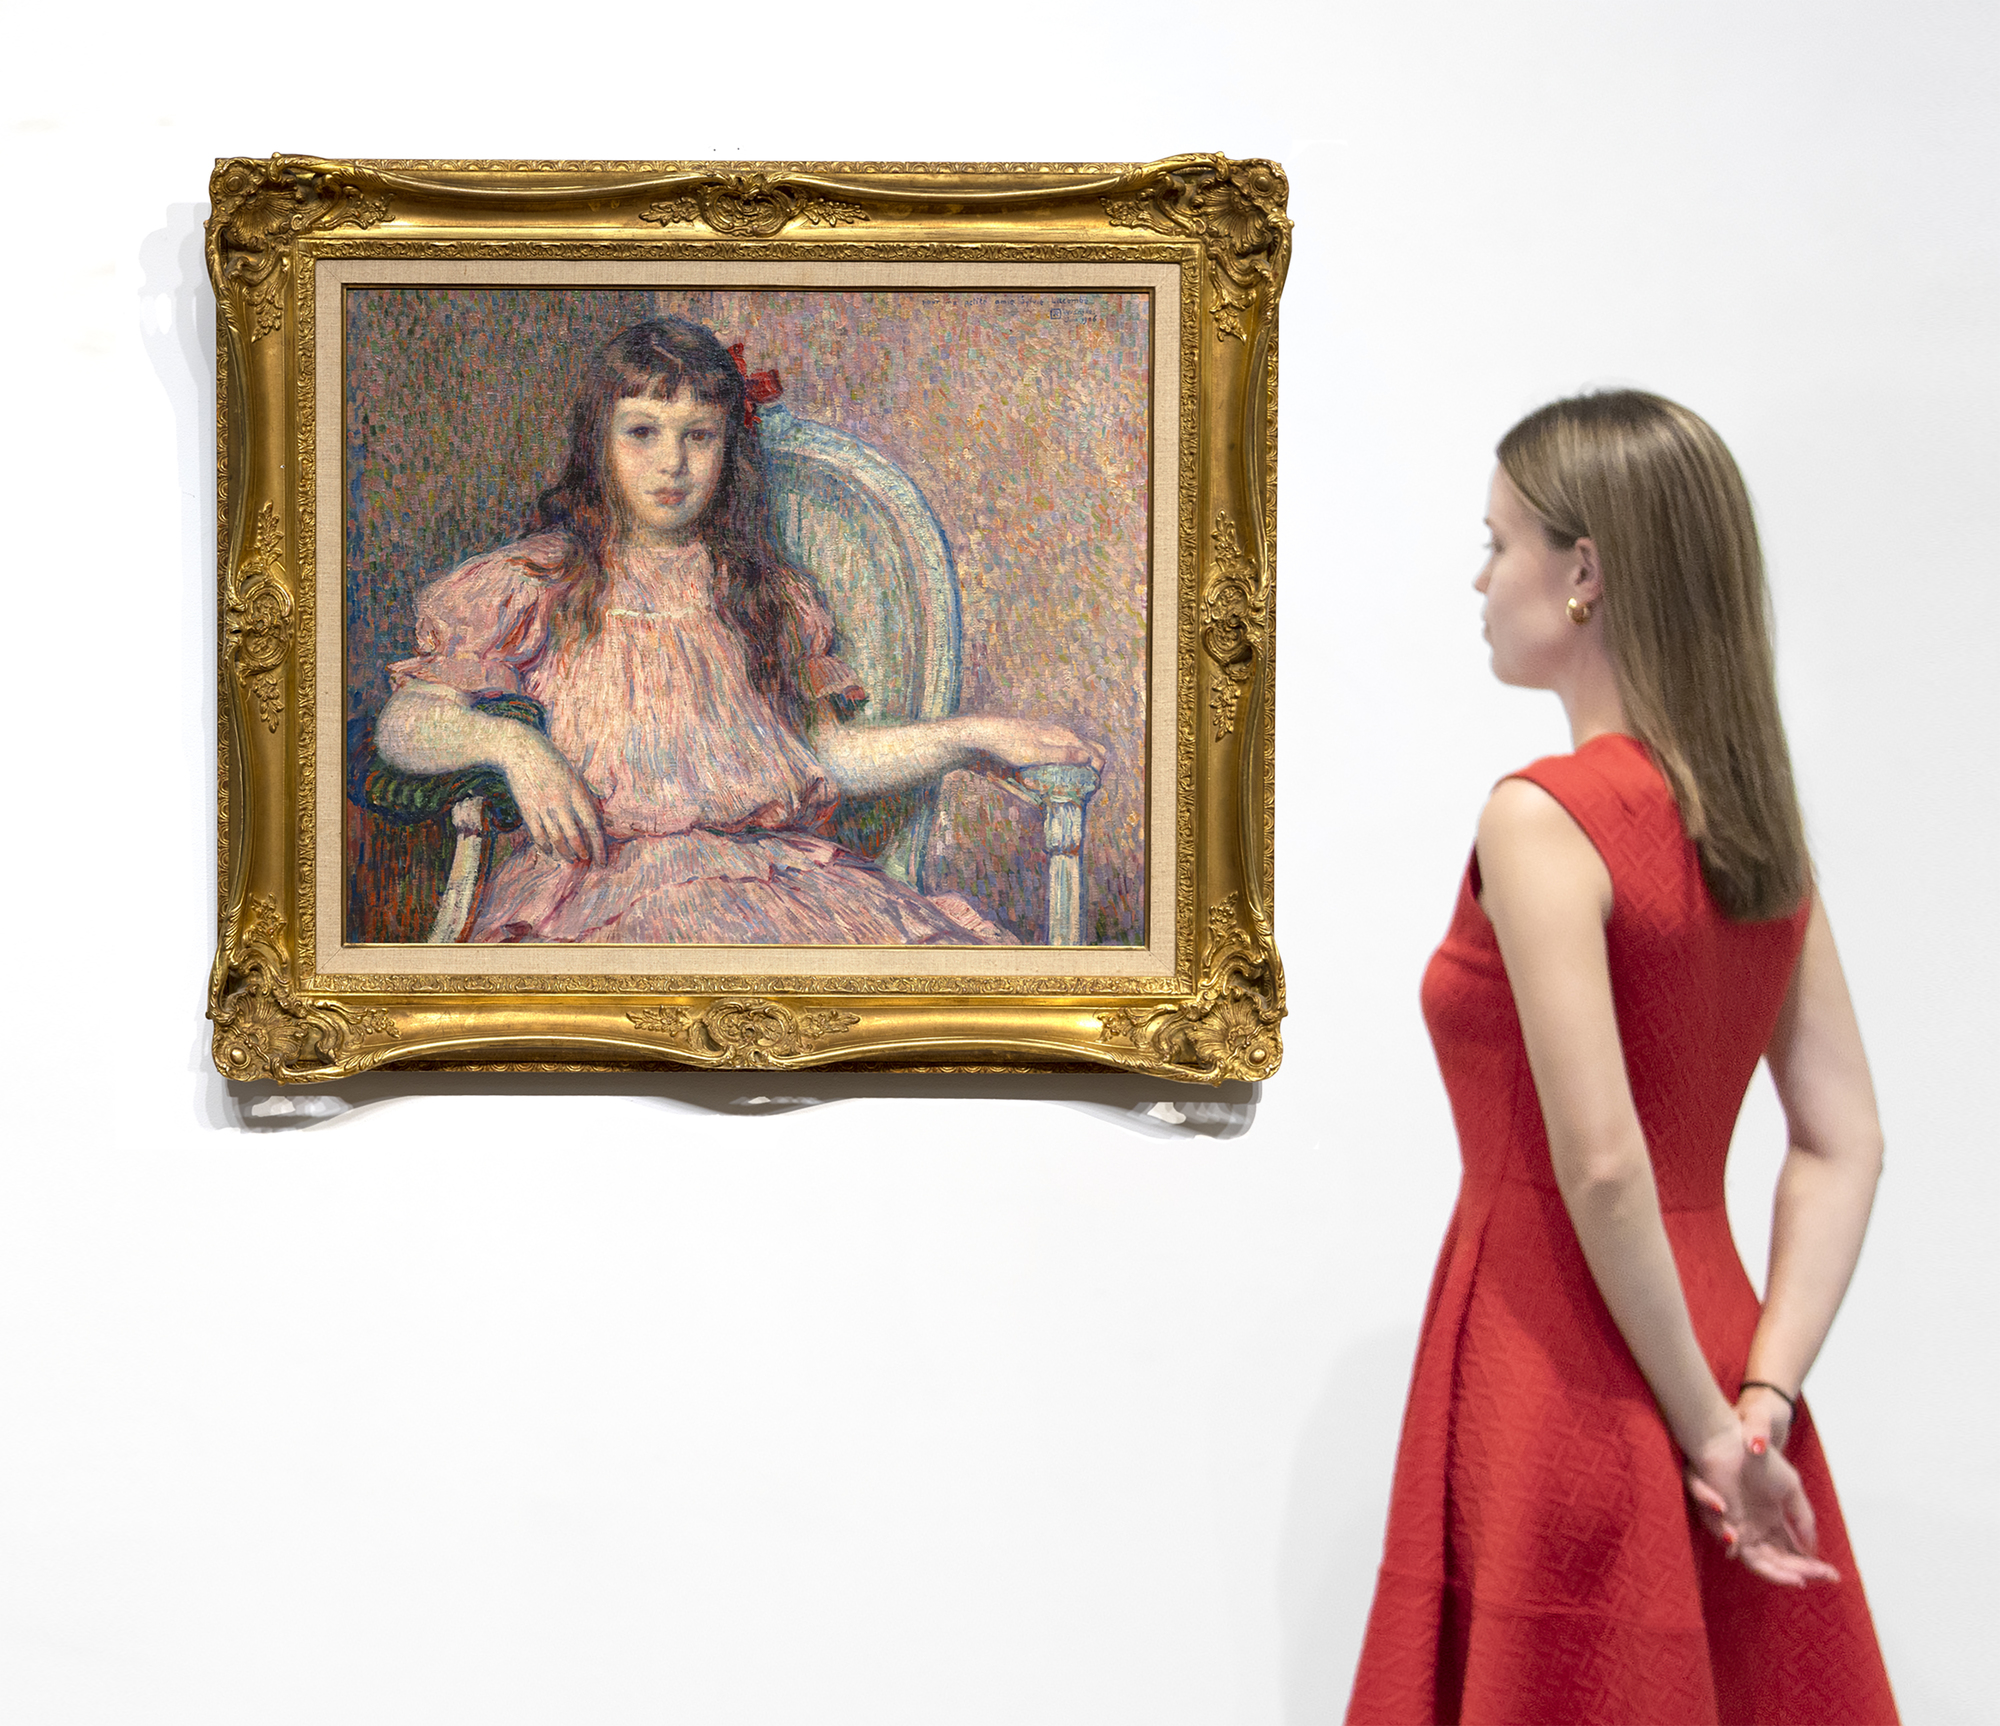 דיוקן סילבי לאקומב של תיאו ואן רייסלברגה, שצויר בשנת 1906, הוא יצירת מופת קלאסית של אחד מציירי הדיוקנאות המעודנים והעקביים ביותר של זמנו. הצבע הרמוני, עבודת המכחול נמרצת ומותאמת למשימתה החומרית, גופה וארשת פניה אמיתיים וחושפניים. היושבת היא בתו של חברו הטוב, הצייר ז'ורז' לאקומב, שחלק קשר הדוק עם גוגן, והיה חבר בלה-נאביס עם האמנים בונאר, דניס ווילאר, בין היתר. כיום אנו יודעים על סילבי לאקומב משום שואן ריסלברג מיומנת כל כך בעיבוד הבעות פנים עדינות ובאמצעות התבוננות זהירה ותשומת לב לפרטים, סיפקה תובנות על עולמה הפנימי. הוא בחר במבט ישיר, עיניה אליך, ברית בלתי נמנעת בין הסובייקט לצופה, ללא קשר ליחסנו הפיזי לציור. ואן ריסלברג נטש במידה רבה את הטכניקה הפוינטיליסטית כשצייר דיוקן זה. אבל הוא המשיך ליישם את הקווים המנחים של תורת הצבעים על ידי שימוש בגוונים של אדום - ורוד וסגול - כנגד ירוקים כדי ליצור פלטת צבעים הרמונית ומשופרת של צבעים משלימים, שאליהם הוסיף מבטא חזק כדי למשוך את העין - קשת אדומה רוויה מאוד המונחת באופן א-סימטרי בצד ראשה.